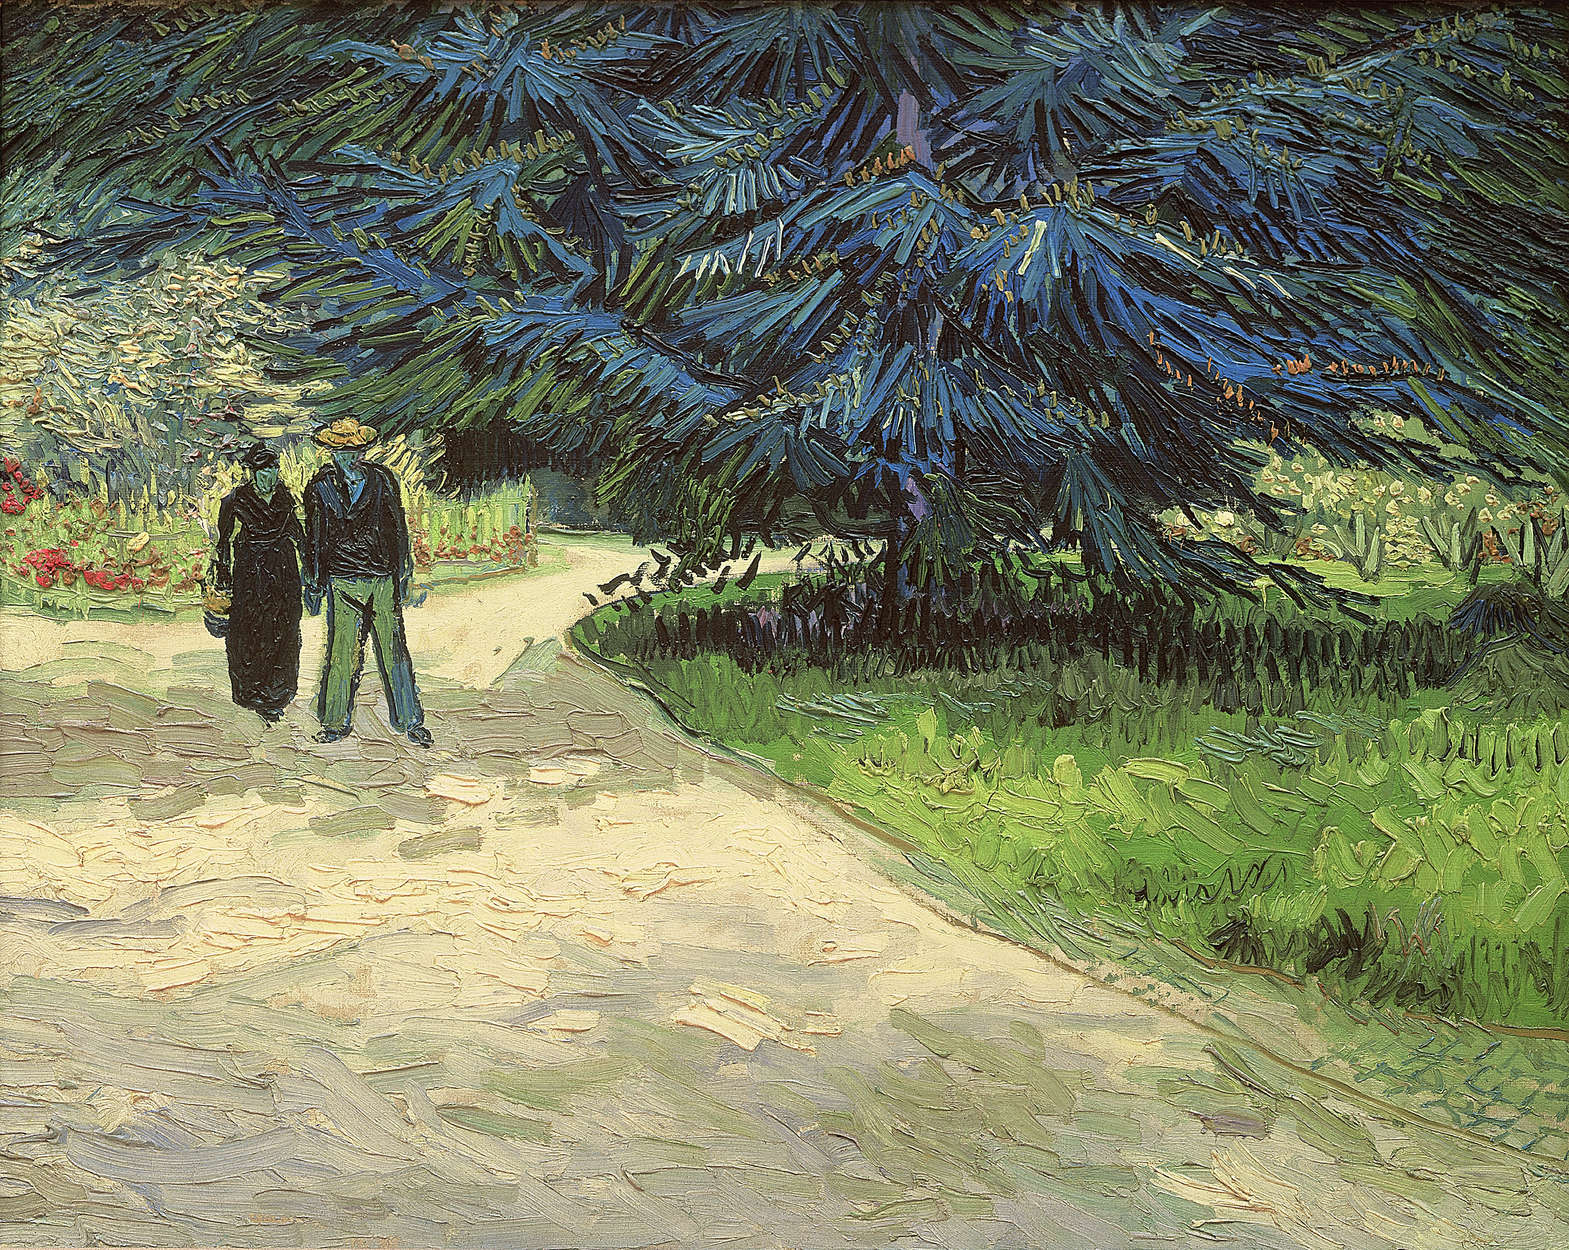             Vincent van Gogh "Glade in een park" muurschildering
        